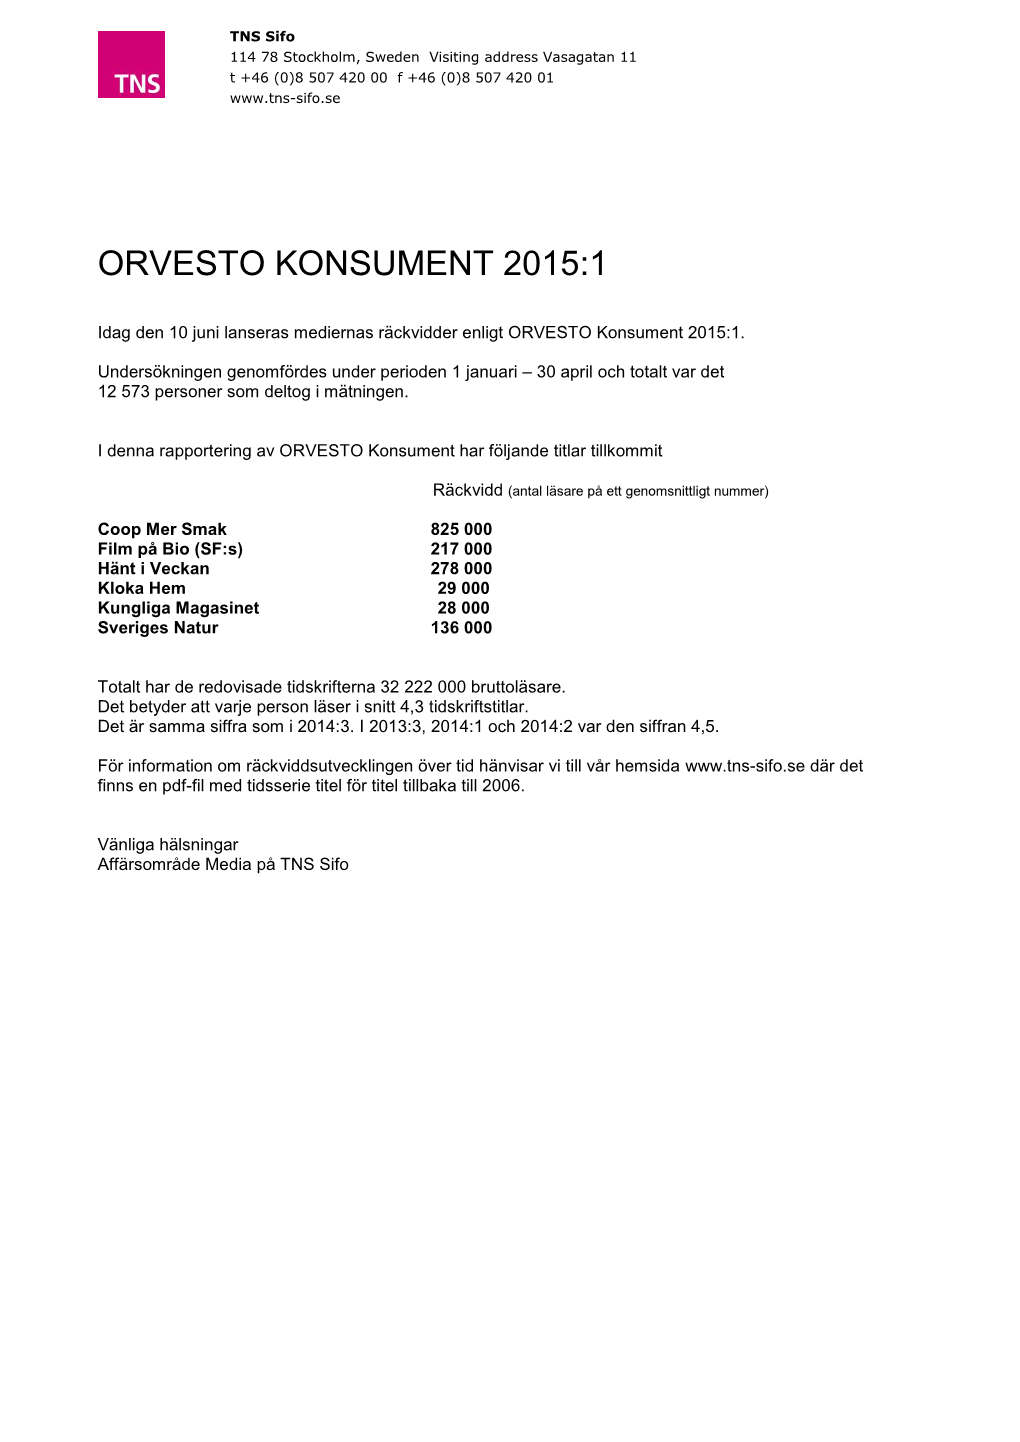 Orvesto Konsument 2015:1